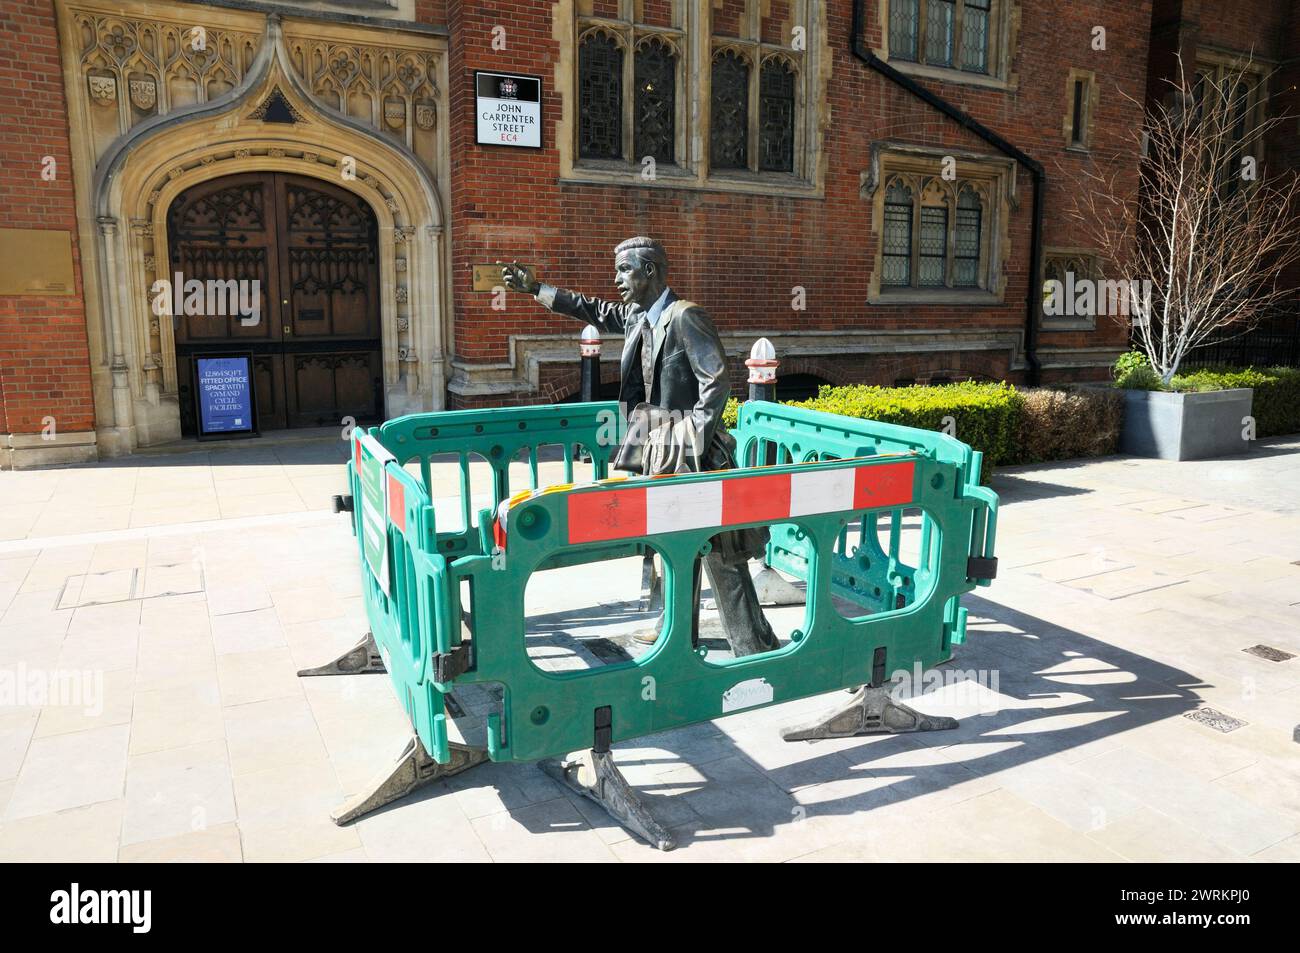 Barrières de sécurité en plastique vert autour de la statue en bronze 'Taxi' par J Seward Johnson, Jr. Streetscene Improvement Works, John Carpenter Street, Londres, Royaume-Uni Banque D'Images